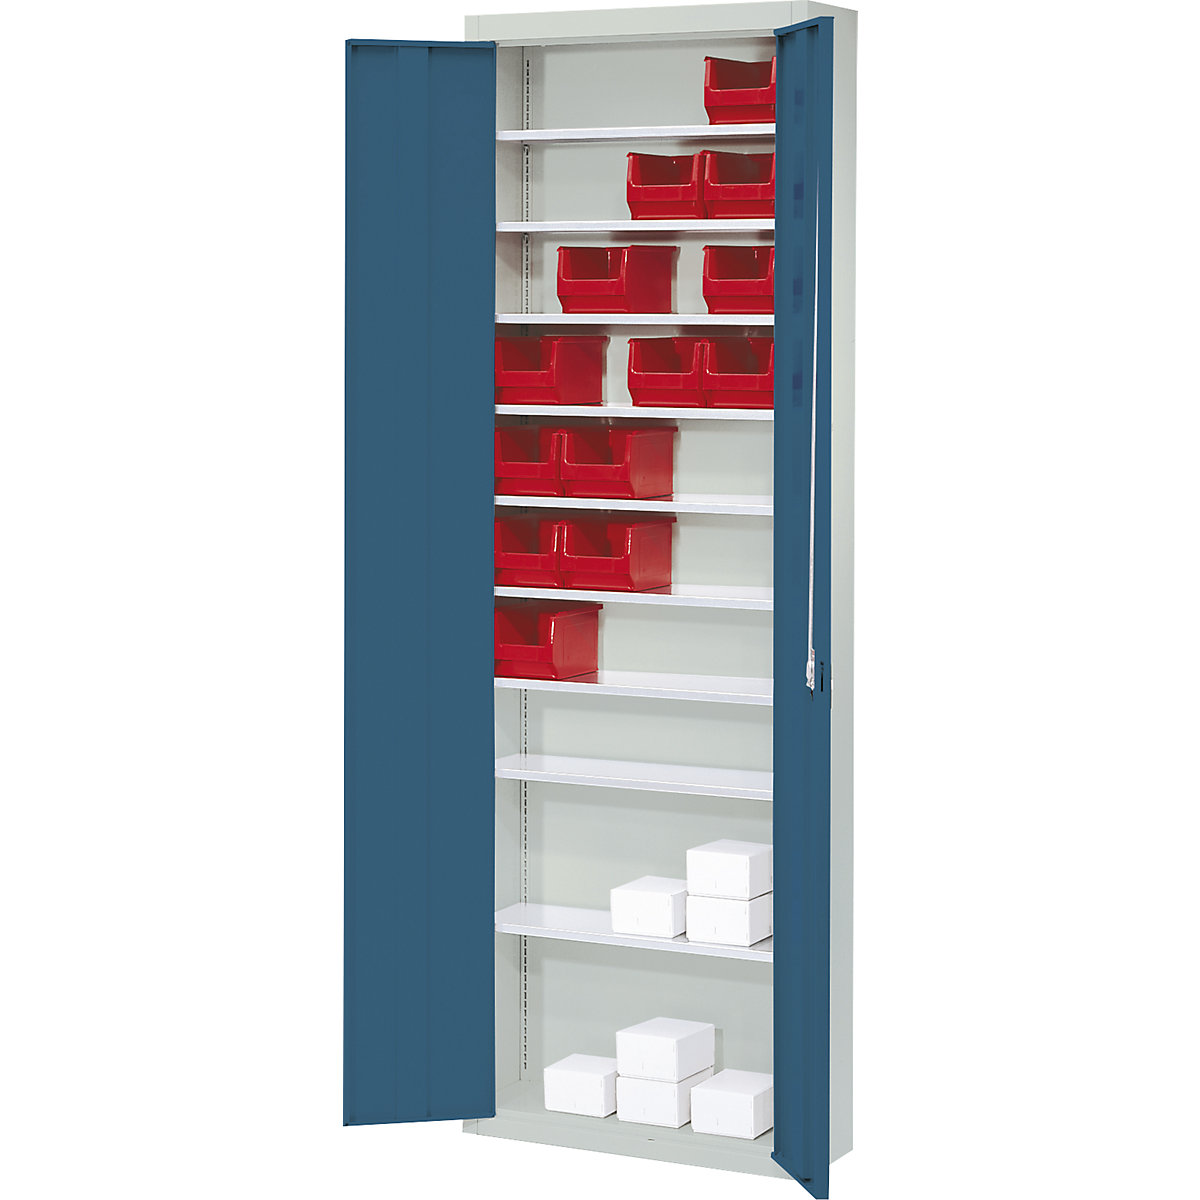 Armario-almacén, sin cajas visualizables – mauser, H x A x P 2150 x 680 x 280 mm, bicolor, cuerpo gris, puertas en azul-6